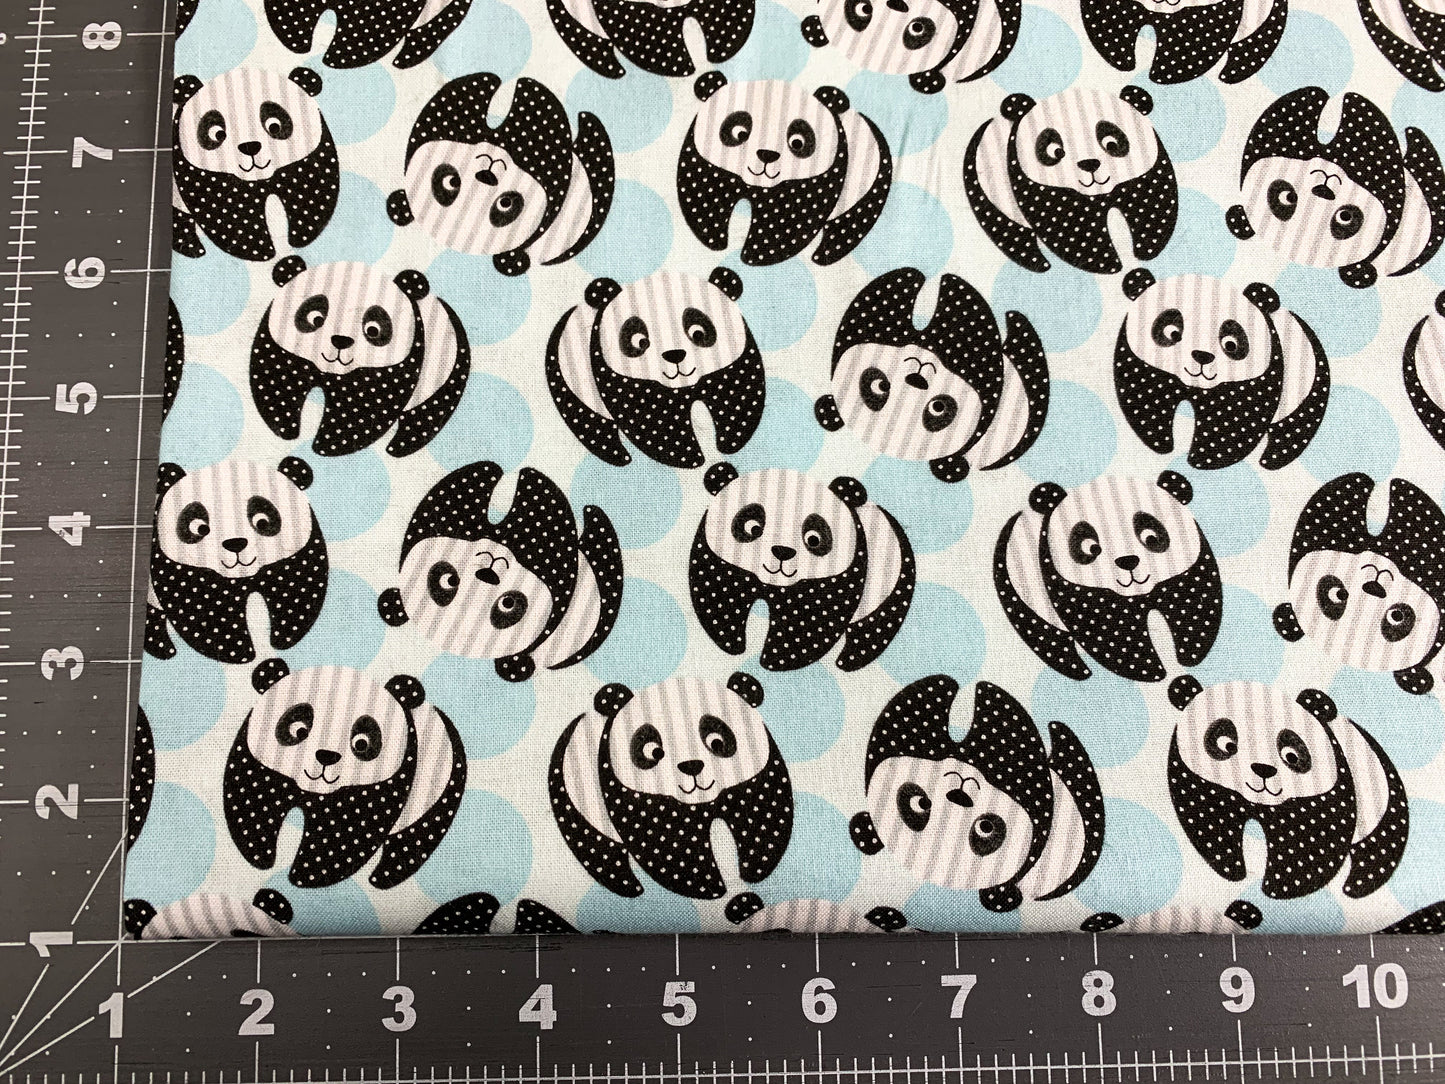 At the Zoo Blue panda bear fabric 6602 Panda bears fabric